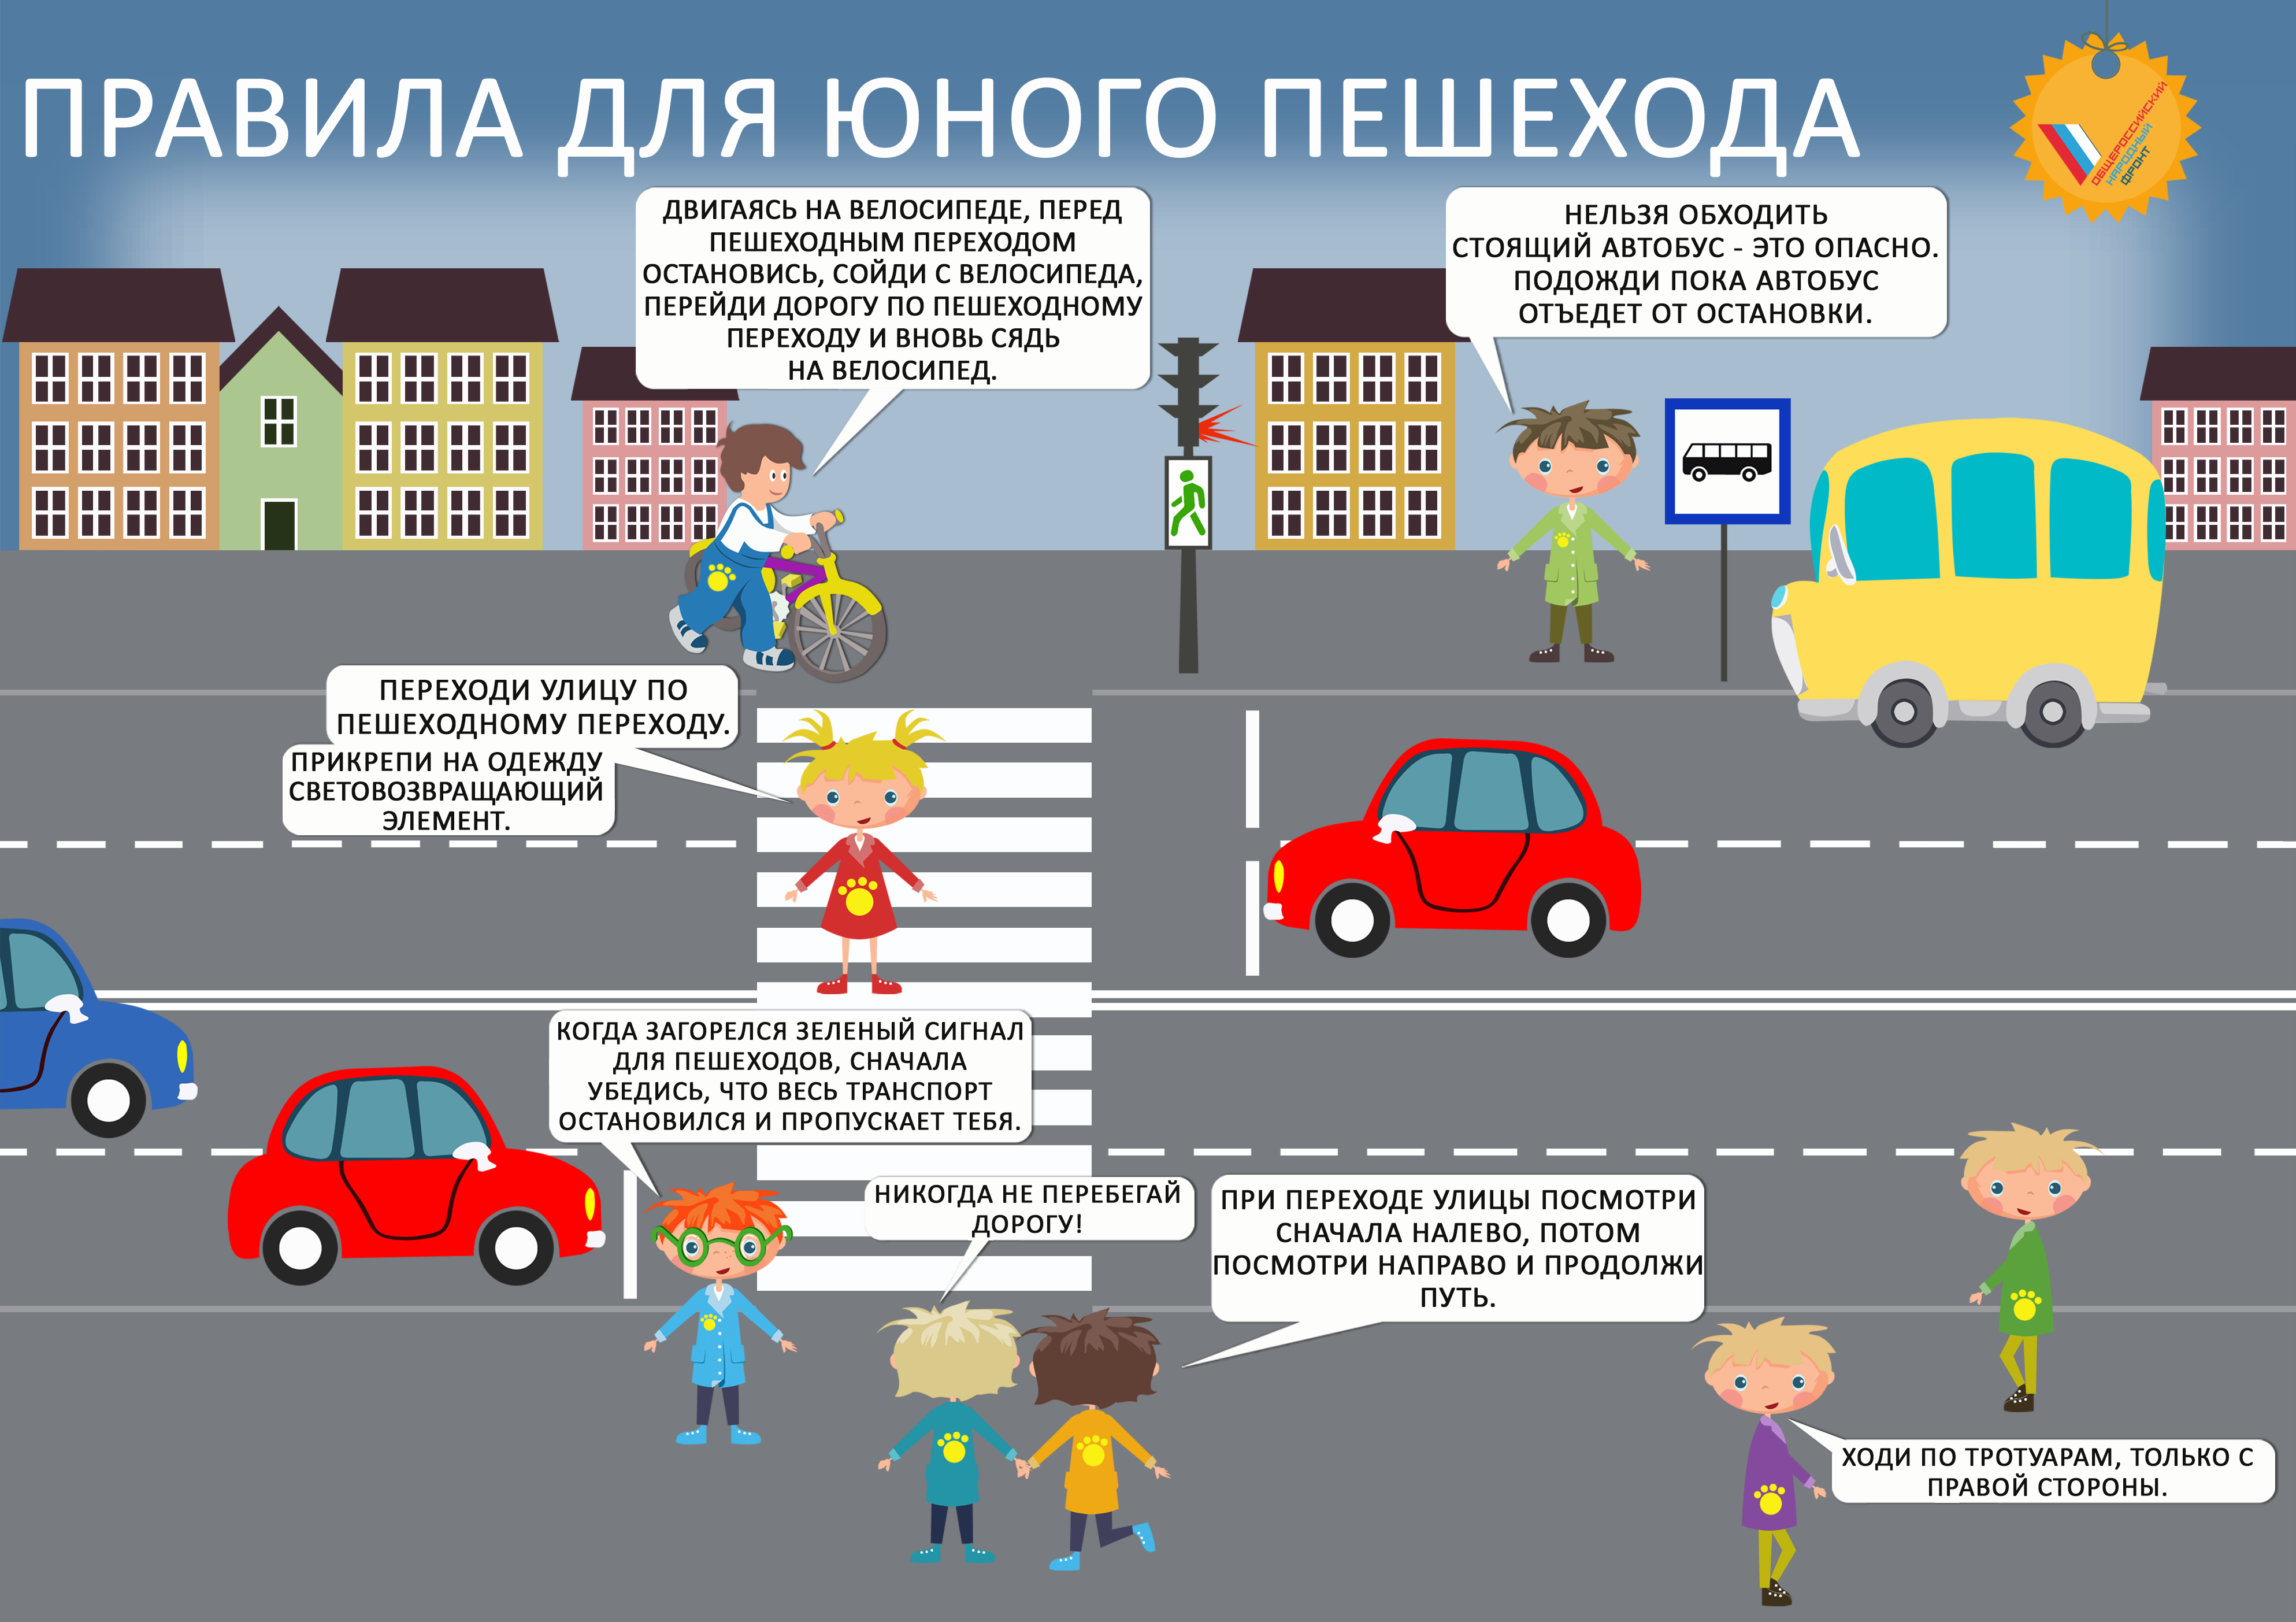 4 по бдд ответы. Правила дорожного движения для детей. Правила дорожного движения для пешеходов. Правила дорожного движения для пешеходов для детей. Правило дорожного движения для детей.